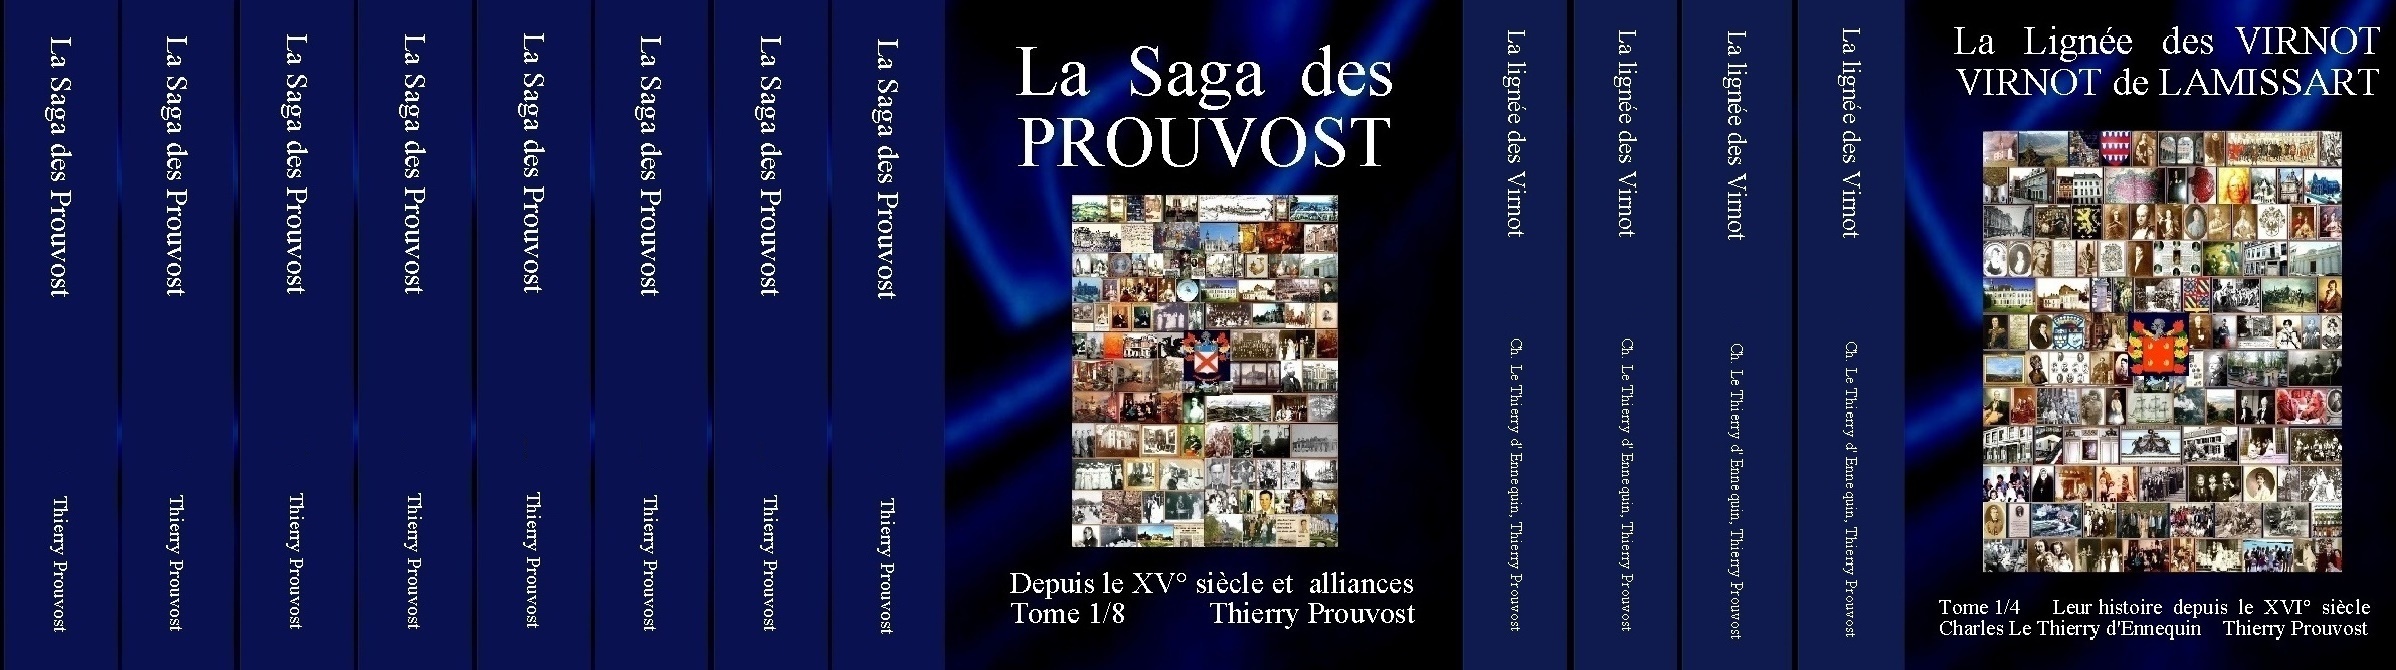 Prouvost-Virnot-12-tomes